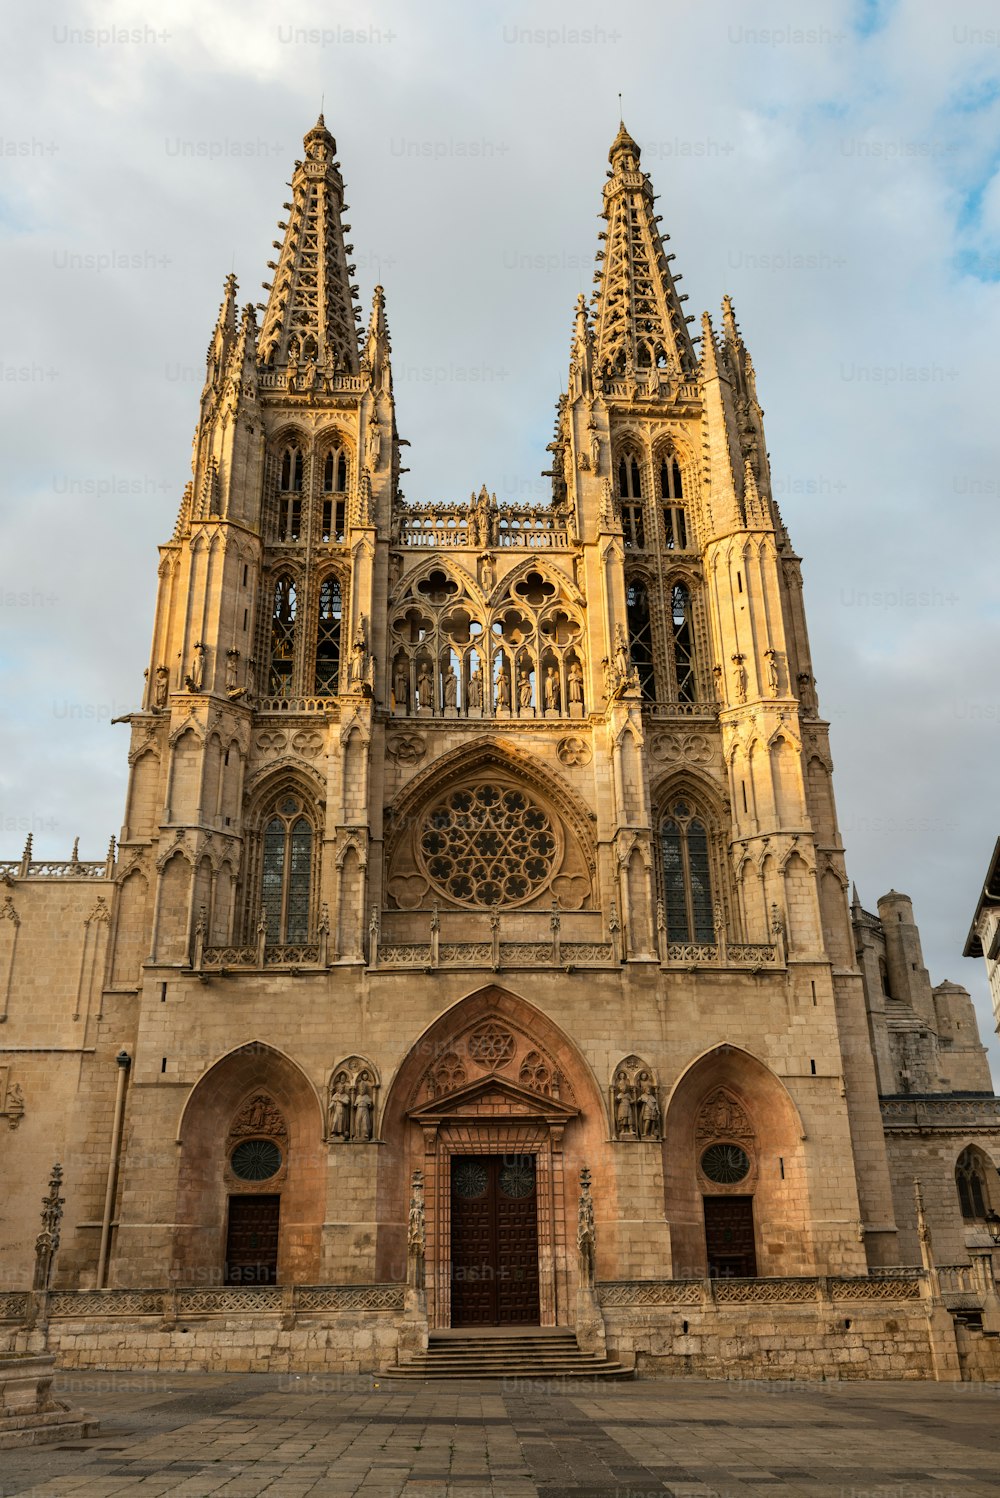 Vista lateral de las dos agujas flamígeras occidentales de la catedral gótica católica romana de Burgos (1221-1567) iluminadas por el sol poniente, España.